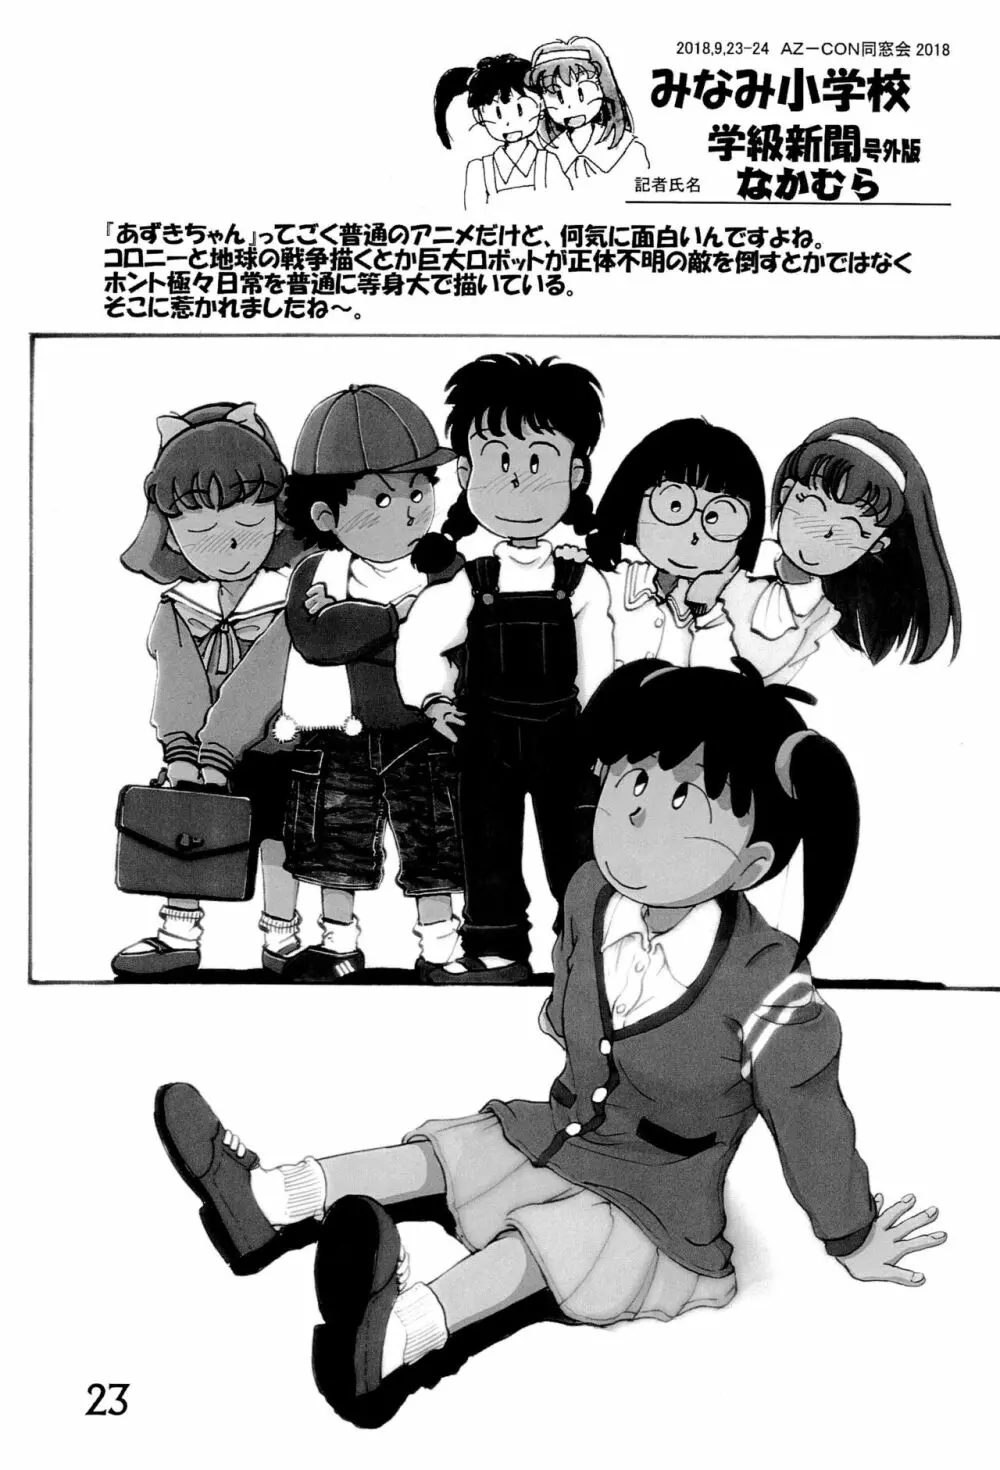 みなみ小学校学級新聞2018+号外版 23ページ